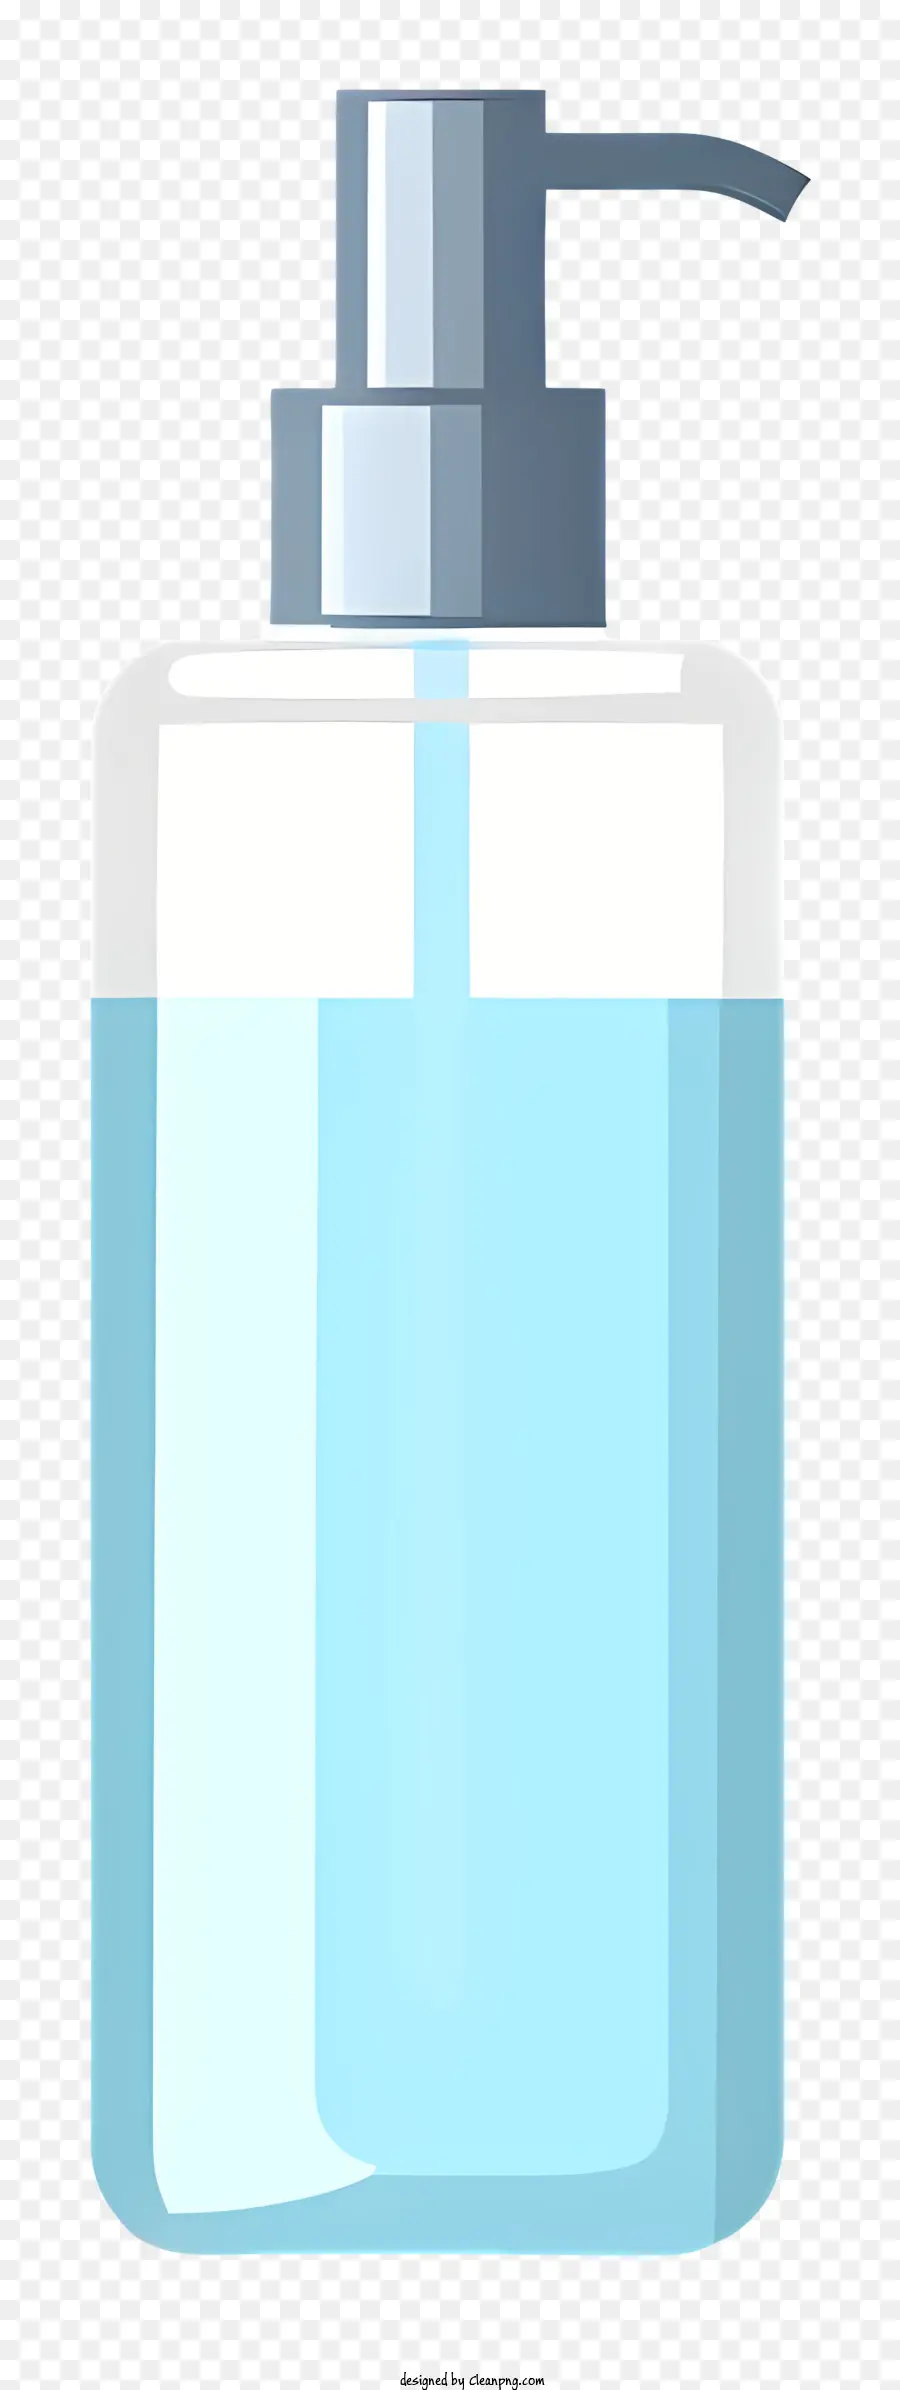 Seifenflaschenseife Spender transparenter Seife Schwarzer Hintergrund rechteckige Flasche - Transparente Flasche Seife mit Spender oben